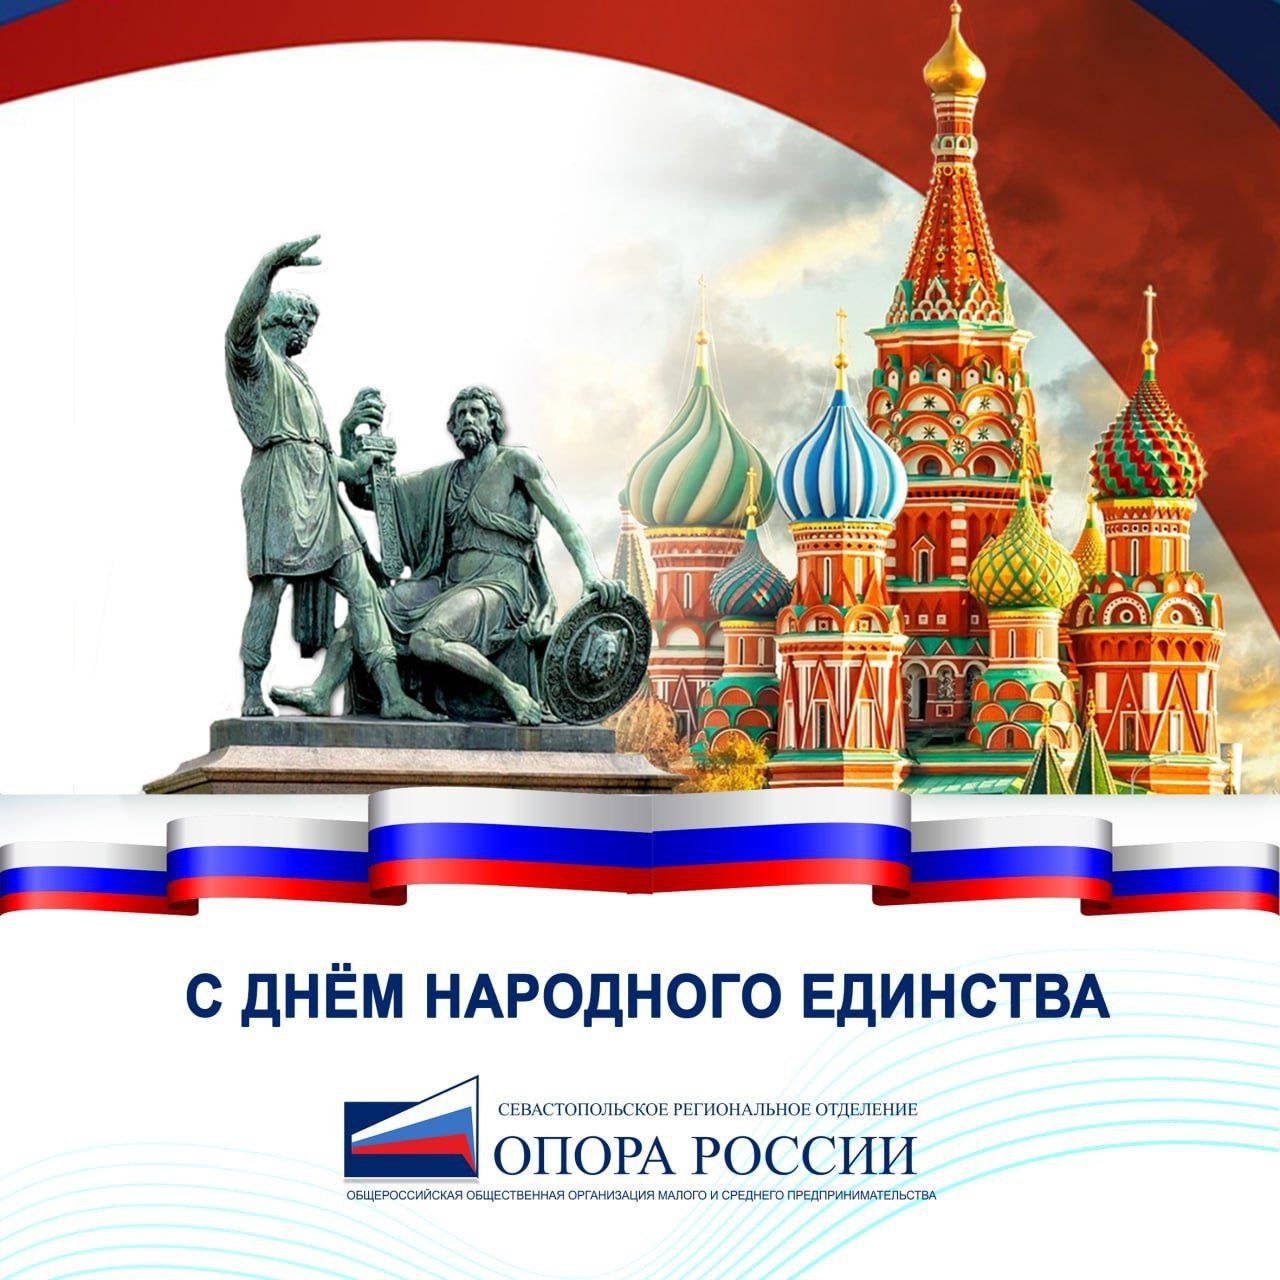 5 апреля день русской нации